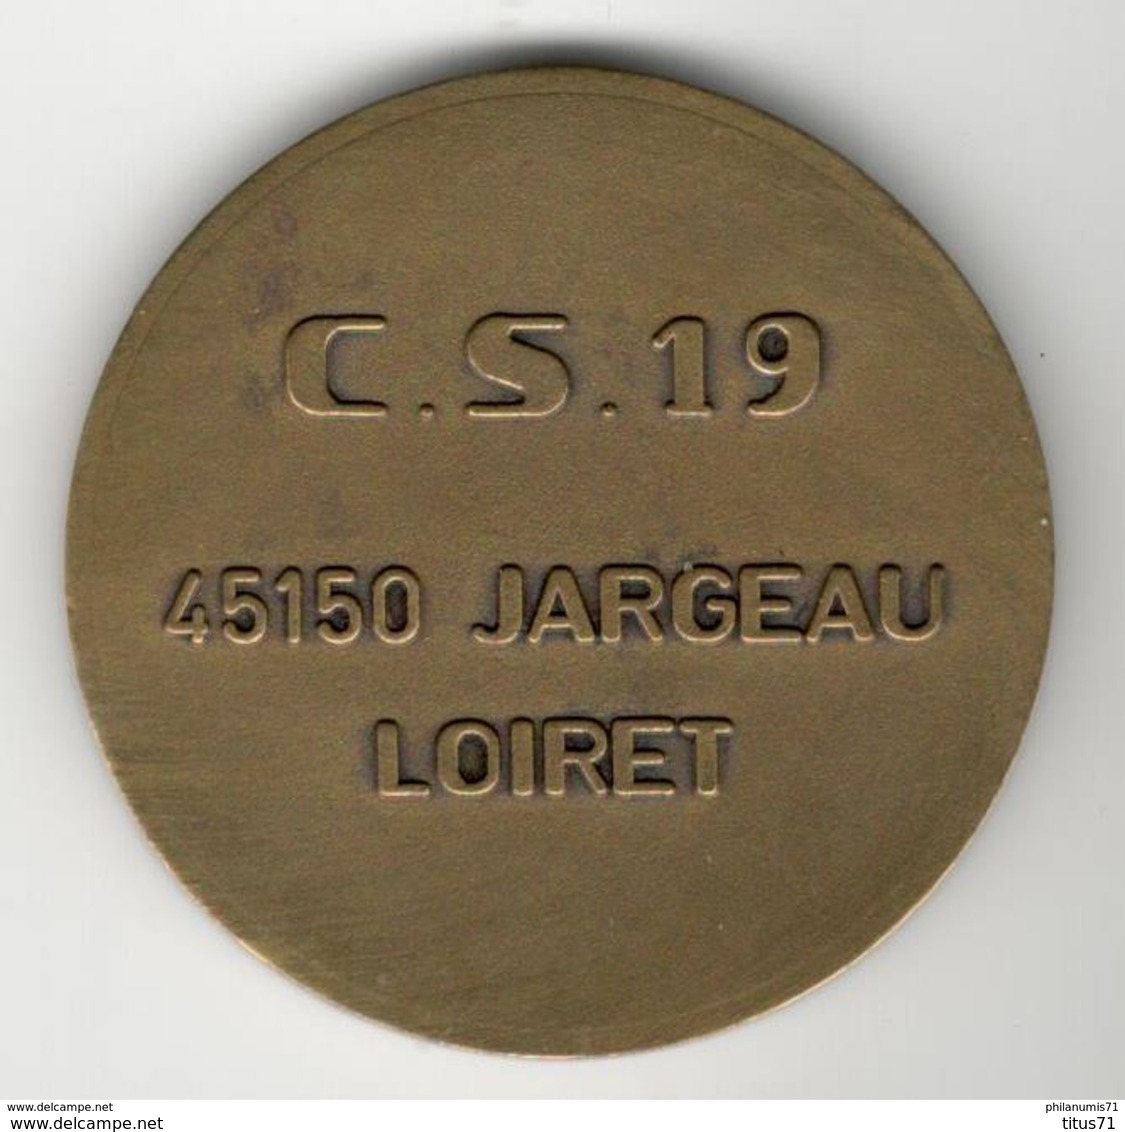 Médaille Sapeurs Pompiers De Jargeau - CS 19 - 45150 Jargeau Loiret - Pompiers